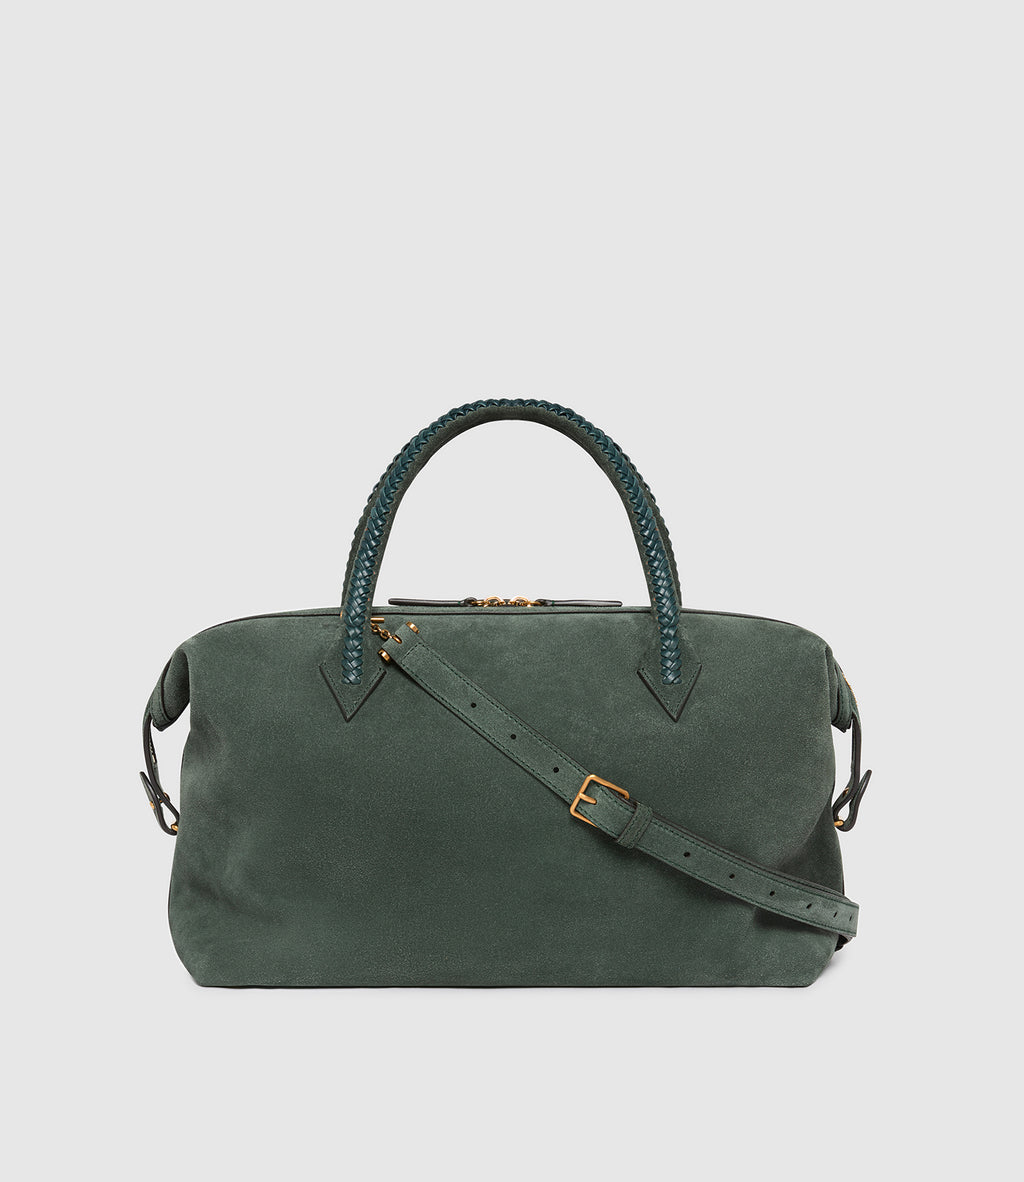 Metier - Women's Perriand City Handbag - Green Suede